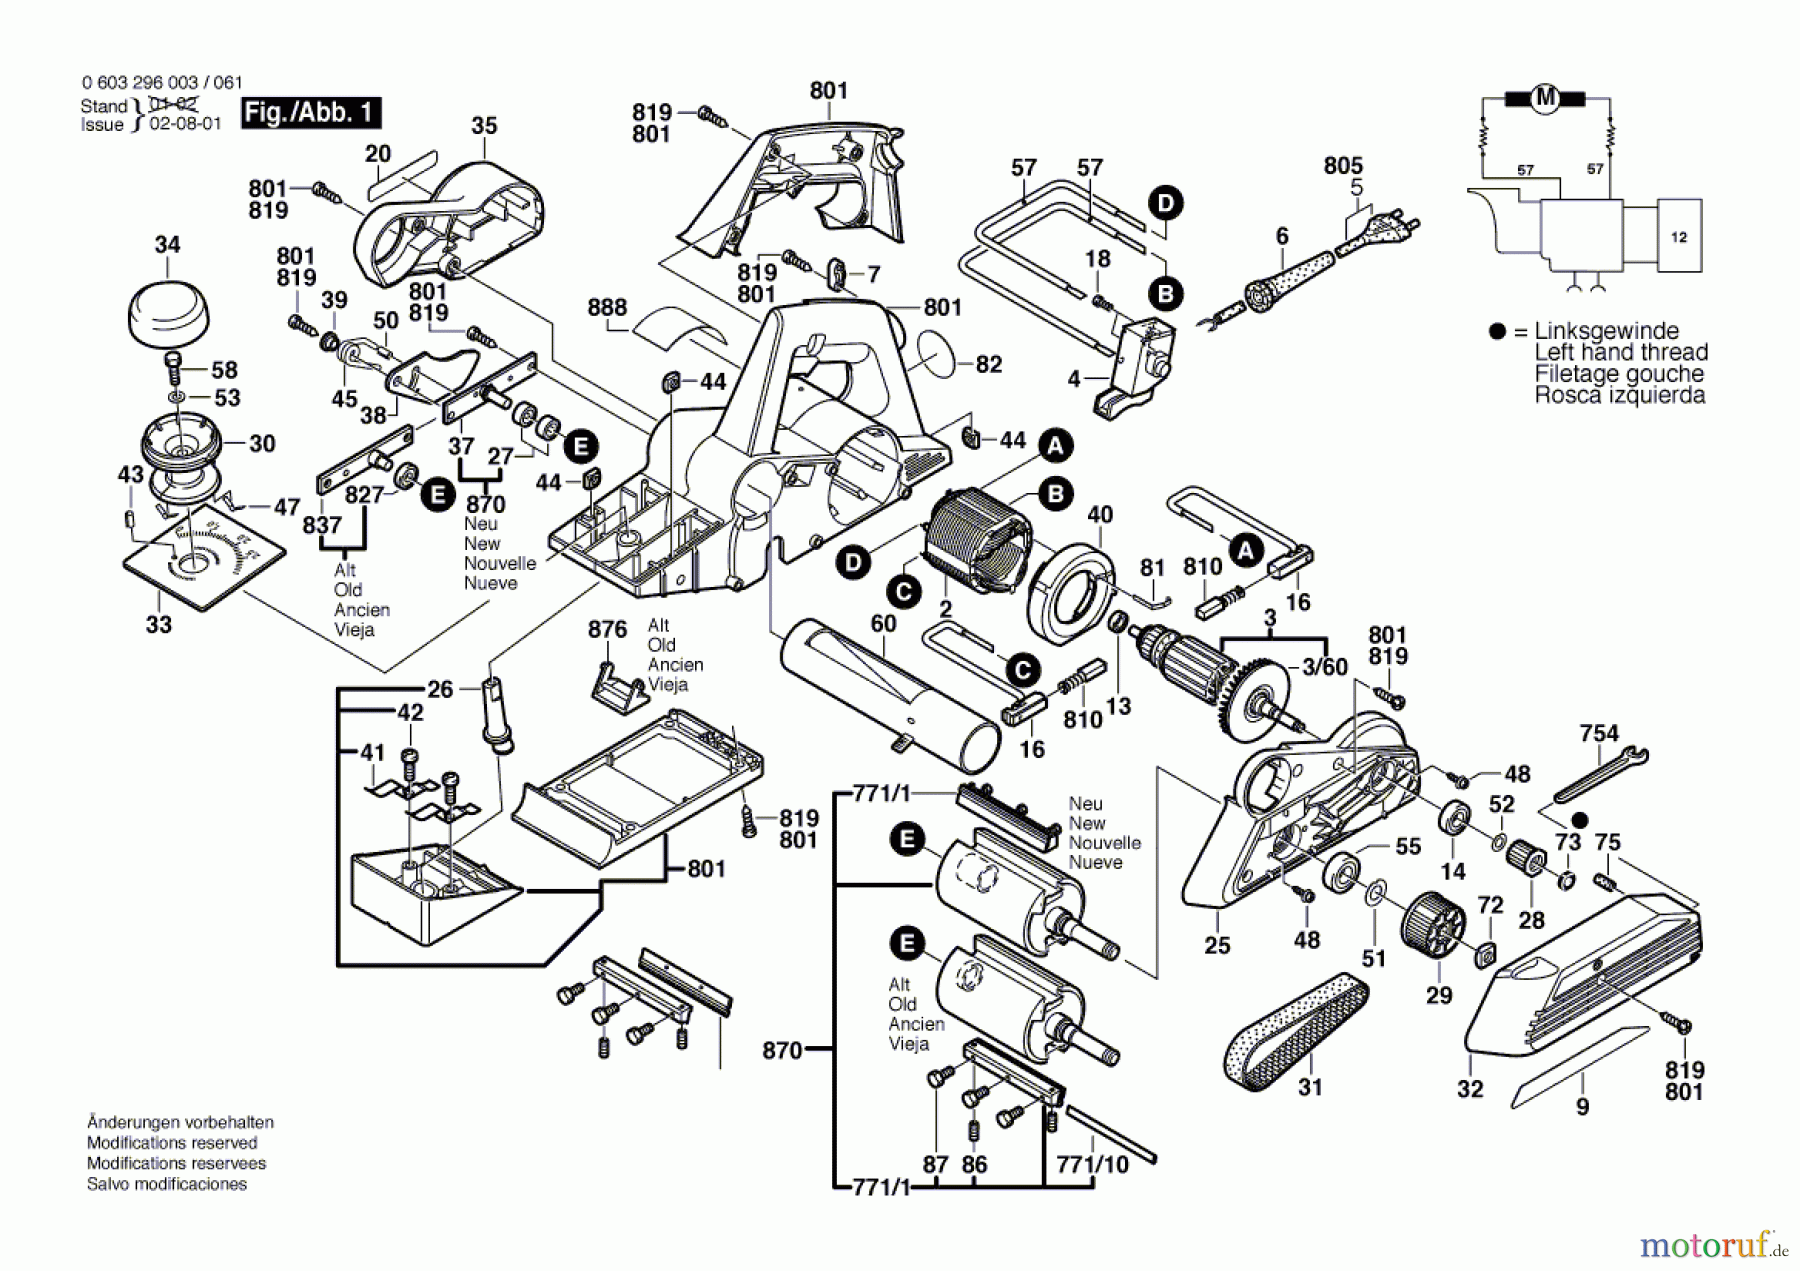  Bosch Werkzeug Handhobel PHO 25-82 Seite 1